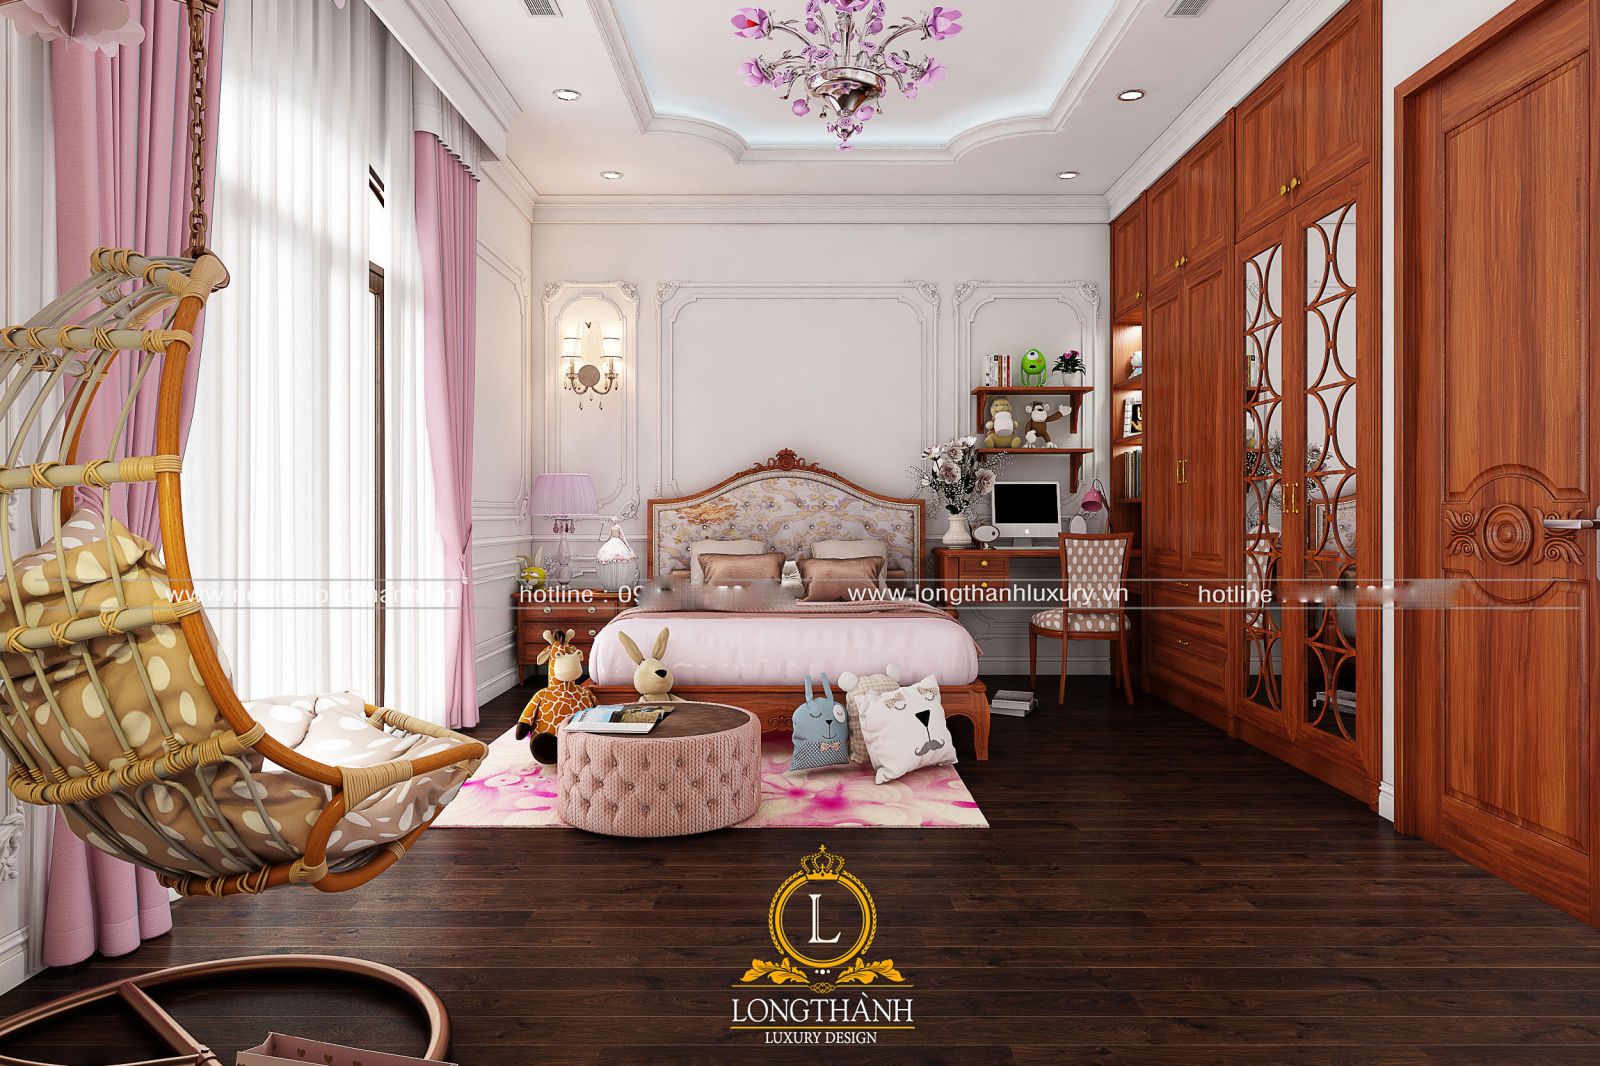 Thiết kế và trang trí nội thất cho phòng ngủ nhỏ theo phong cách Châu Âu